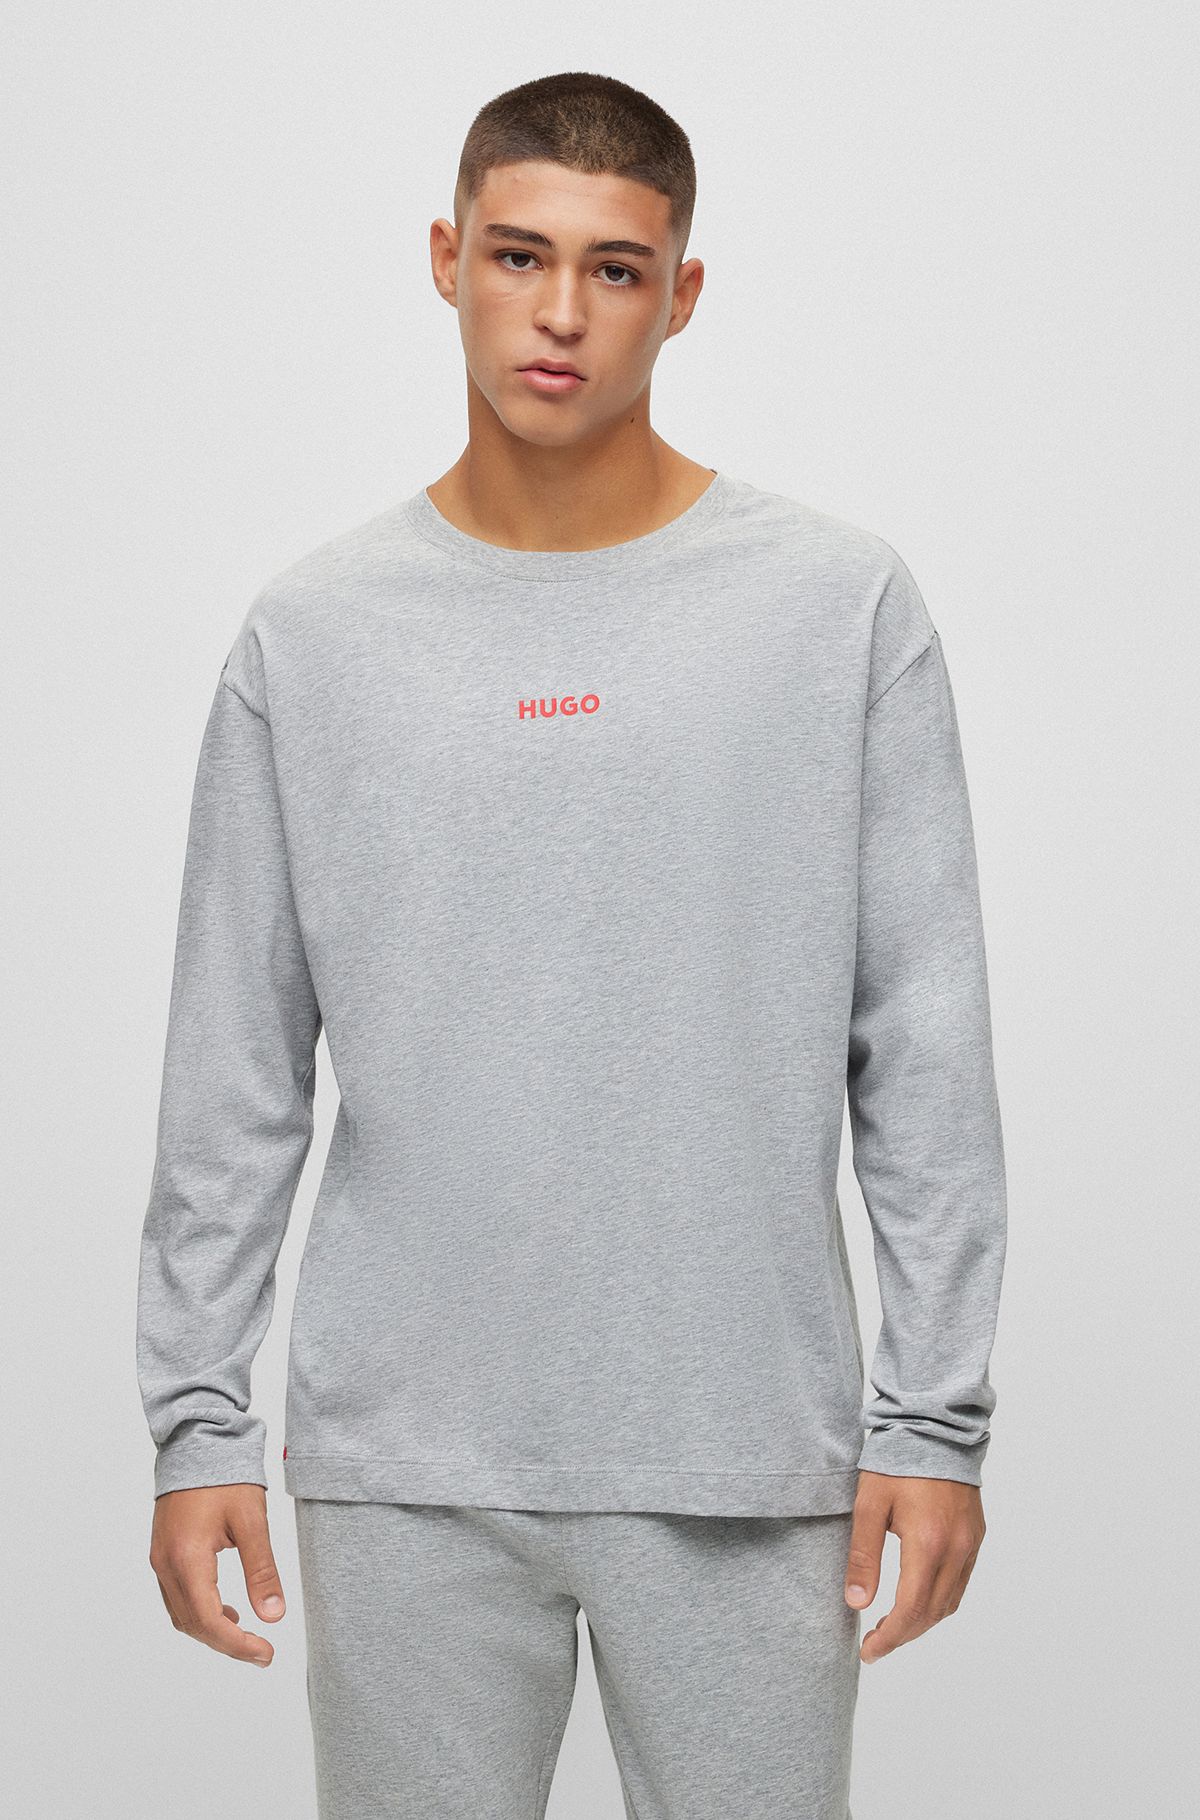 Nightwear for Men Grey by Modern HUGO BOSS